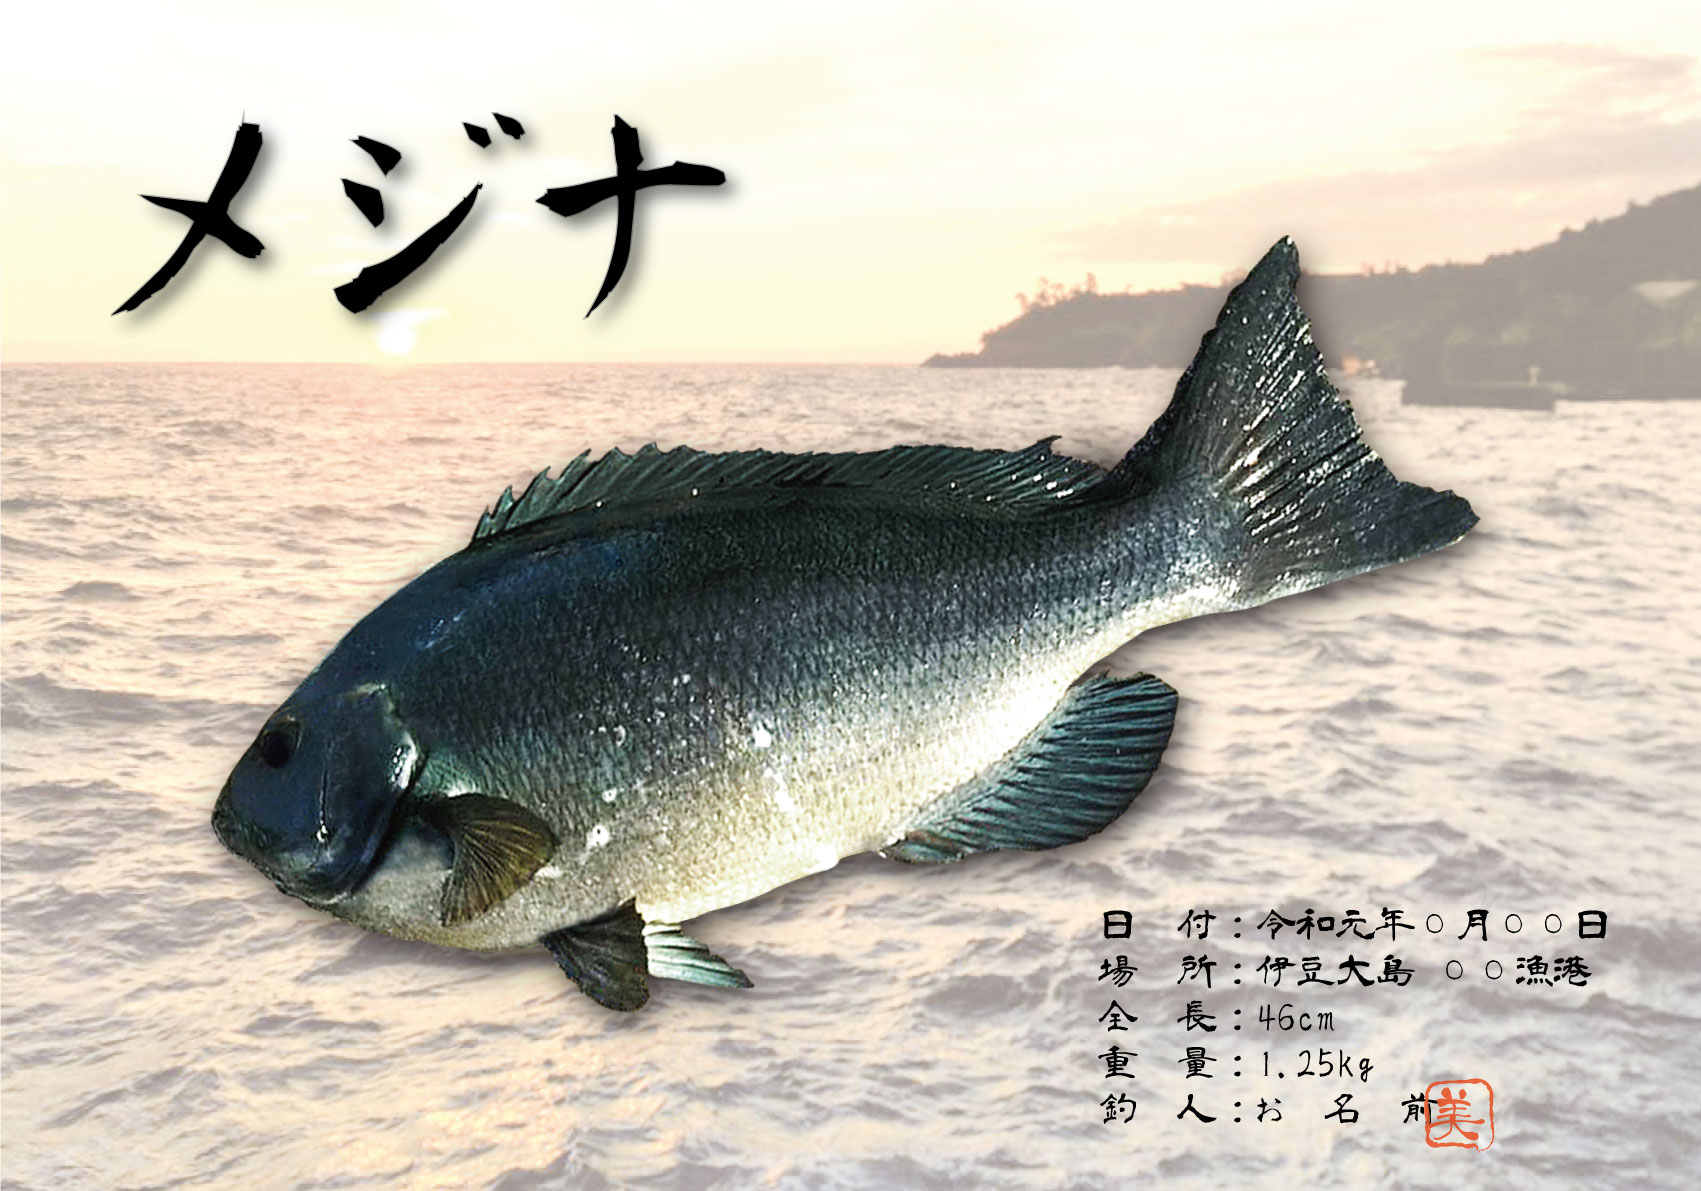 デジタル魚拓-メジナ